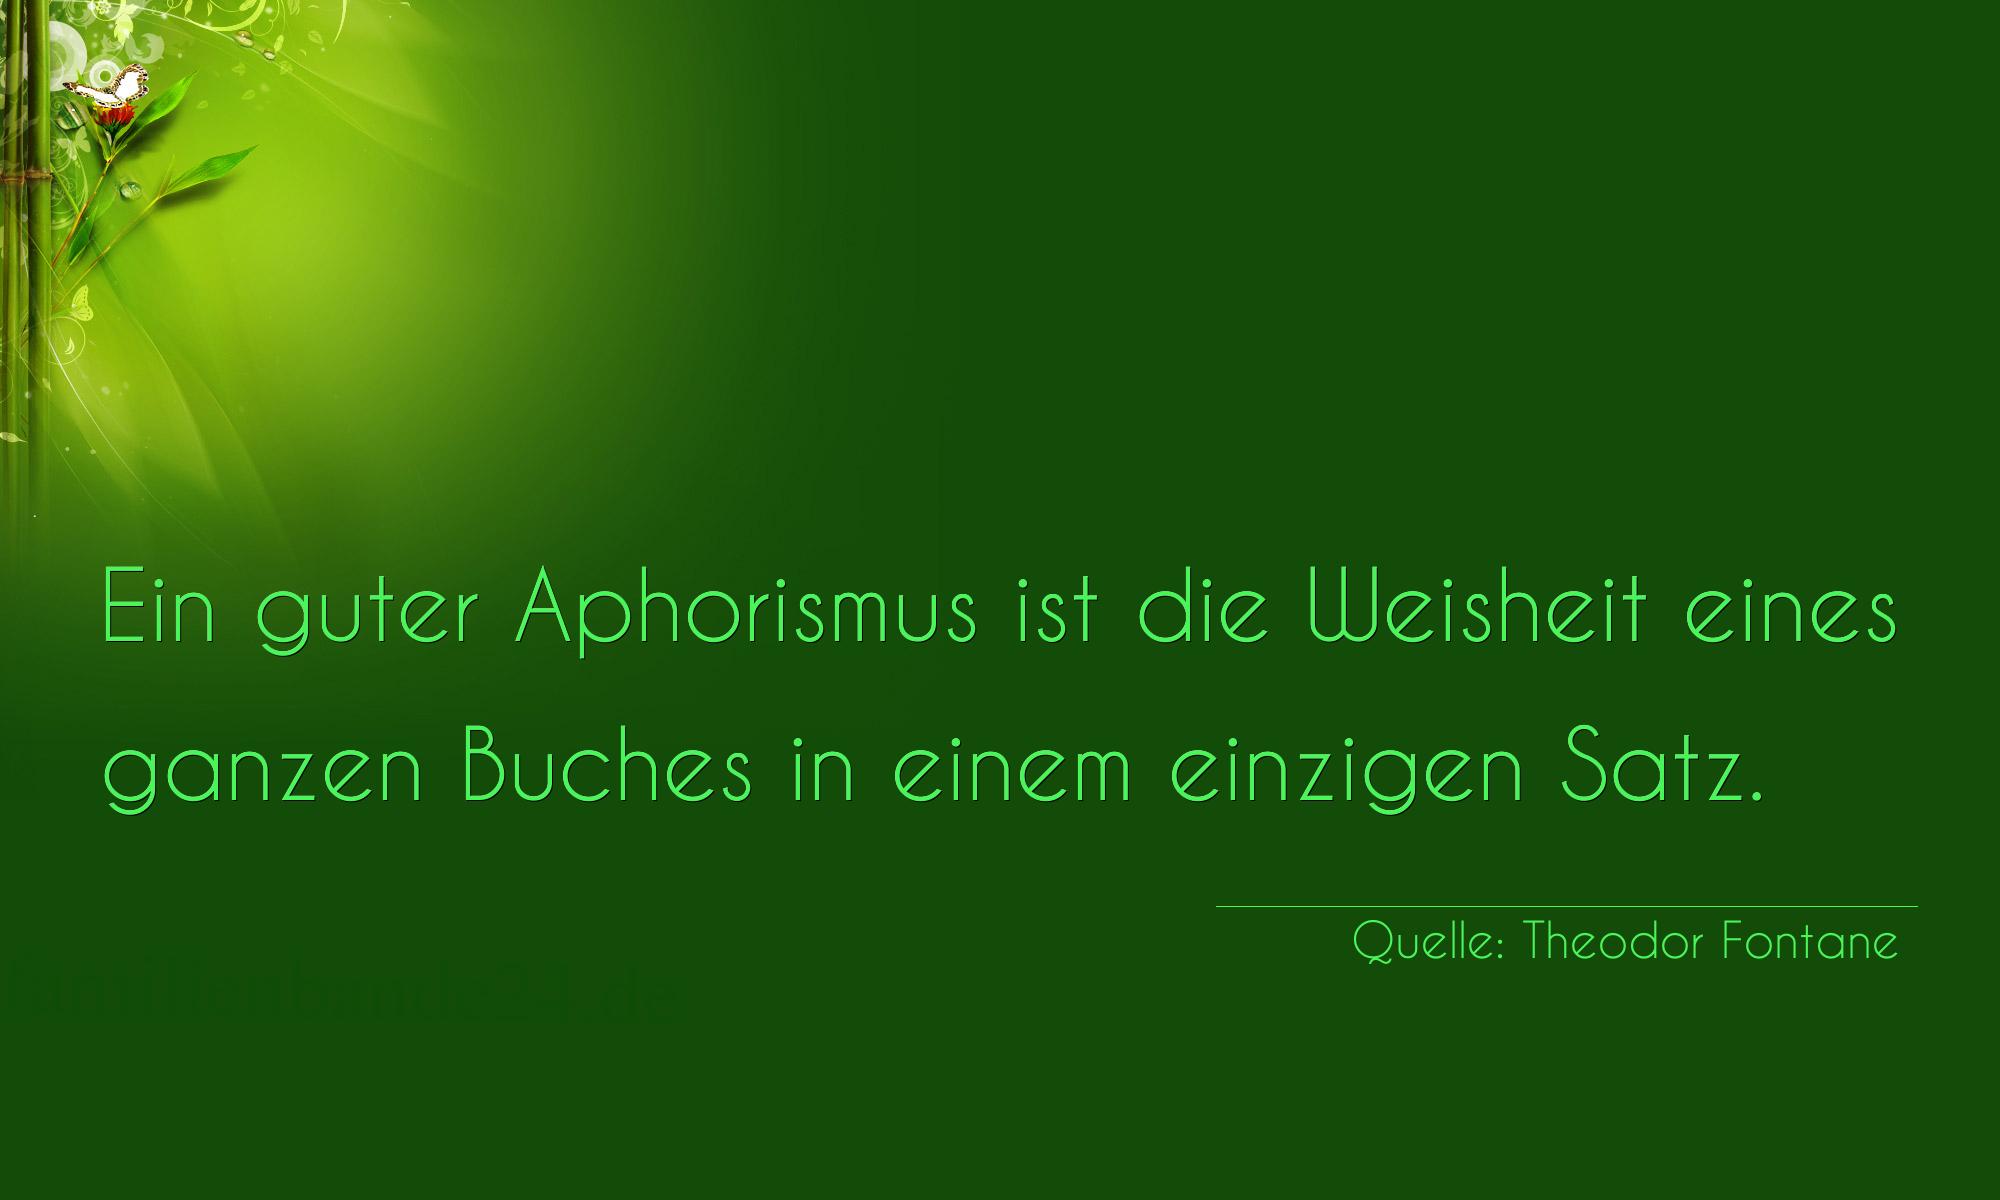 Aphorismus Nummer 1190 (von Theodor Fontane): "Ein guter Aphorismus ist die Weisheit eines ganzen Buches [...]